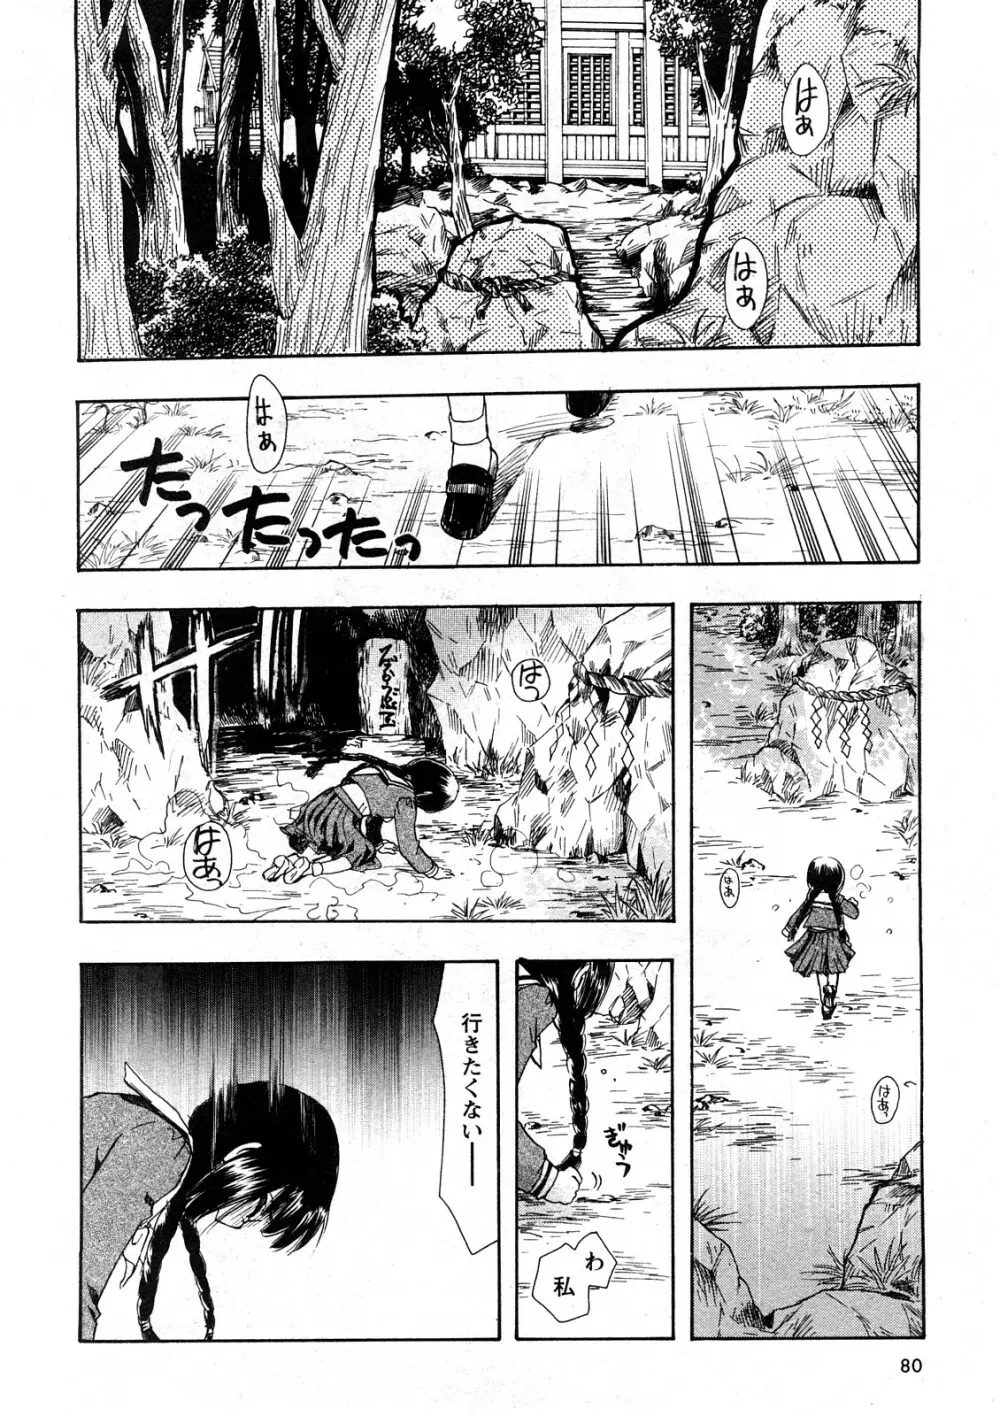 コミック嵐王 らんおう Vol.4 75ページ